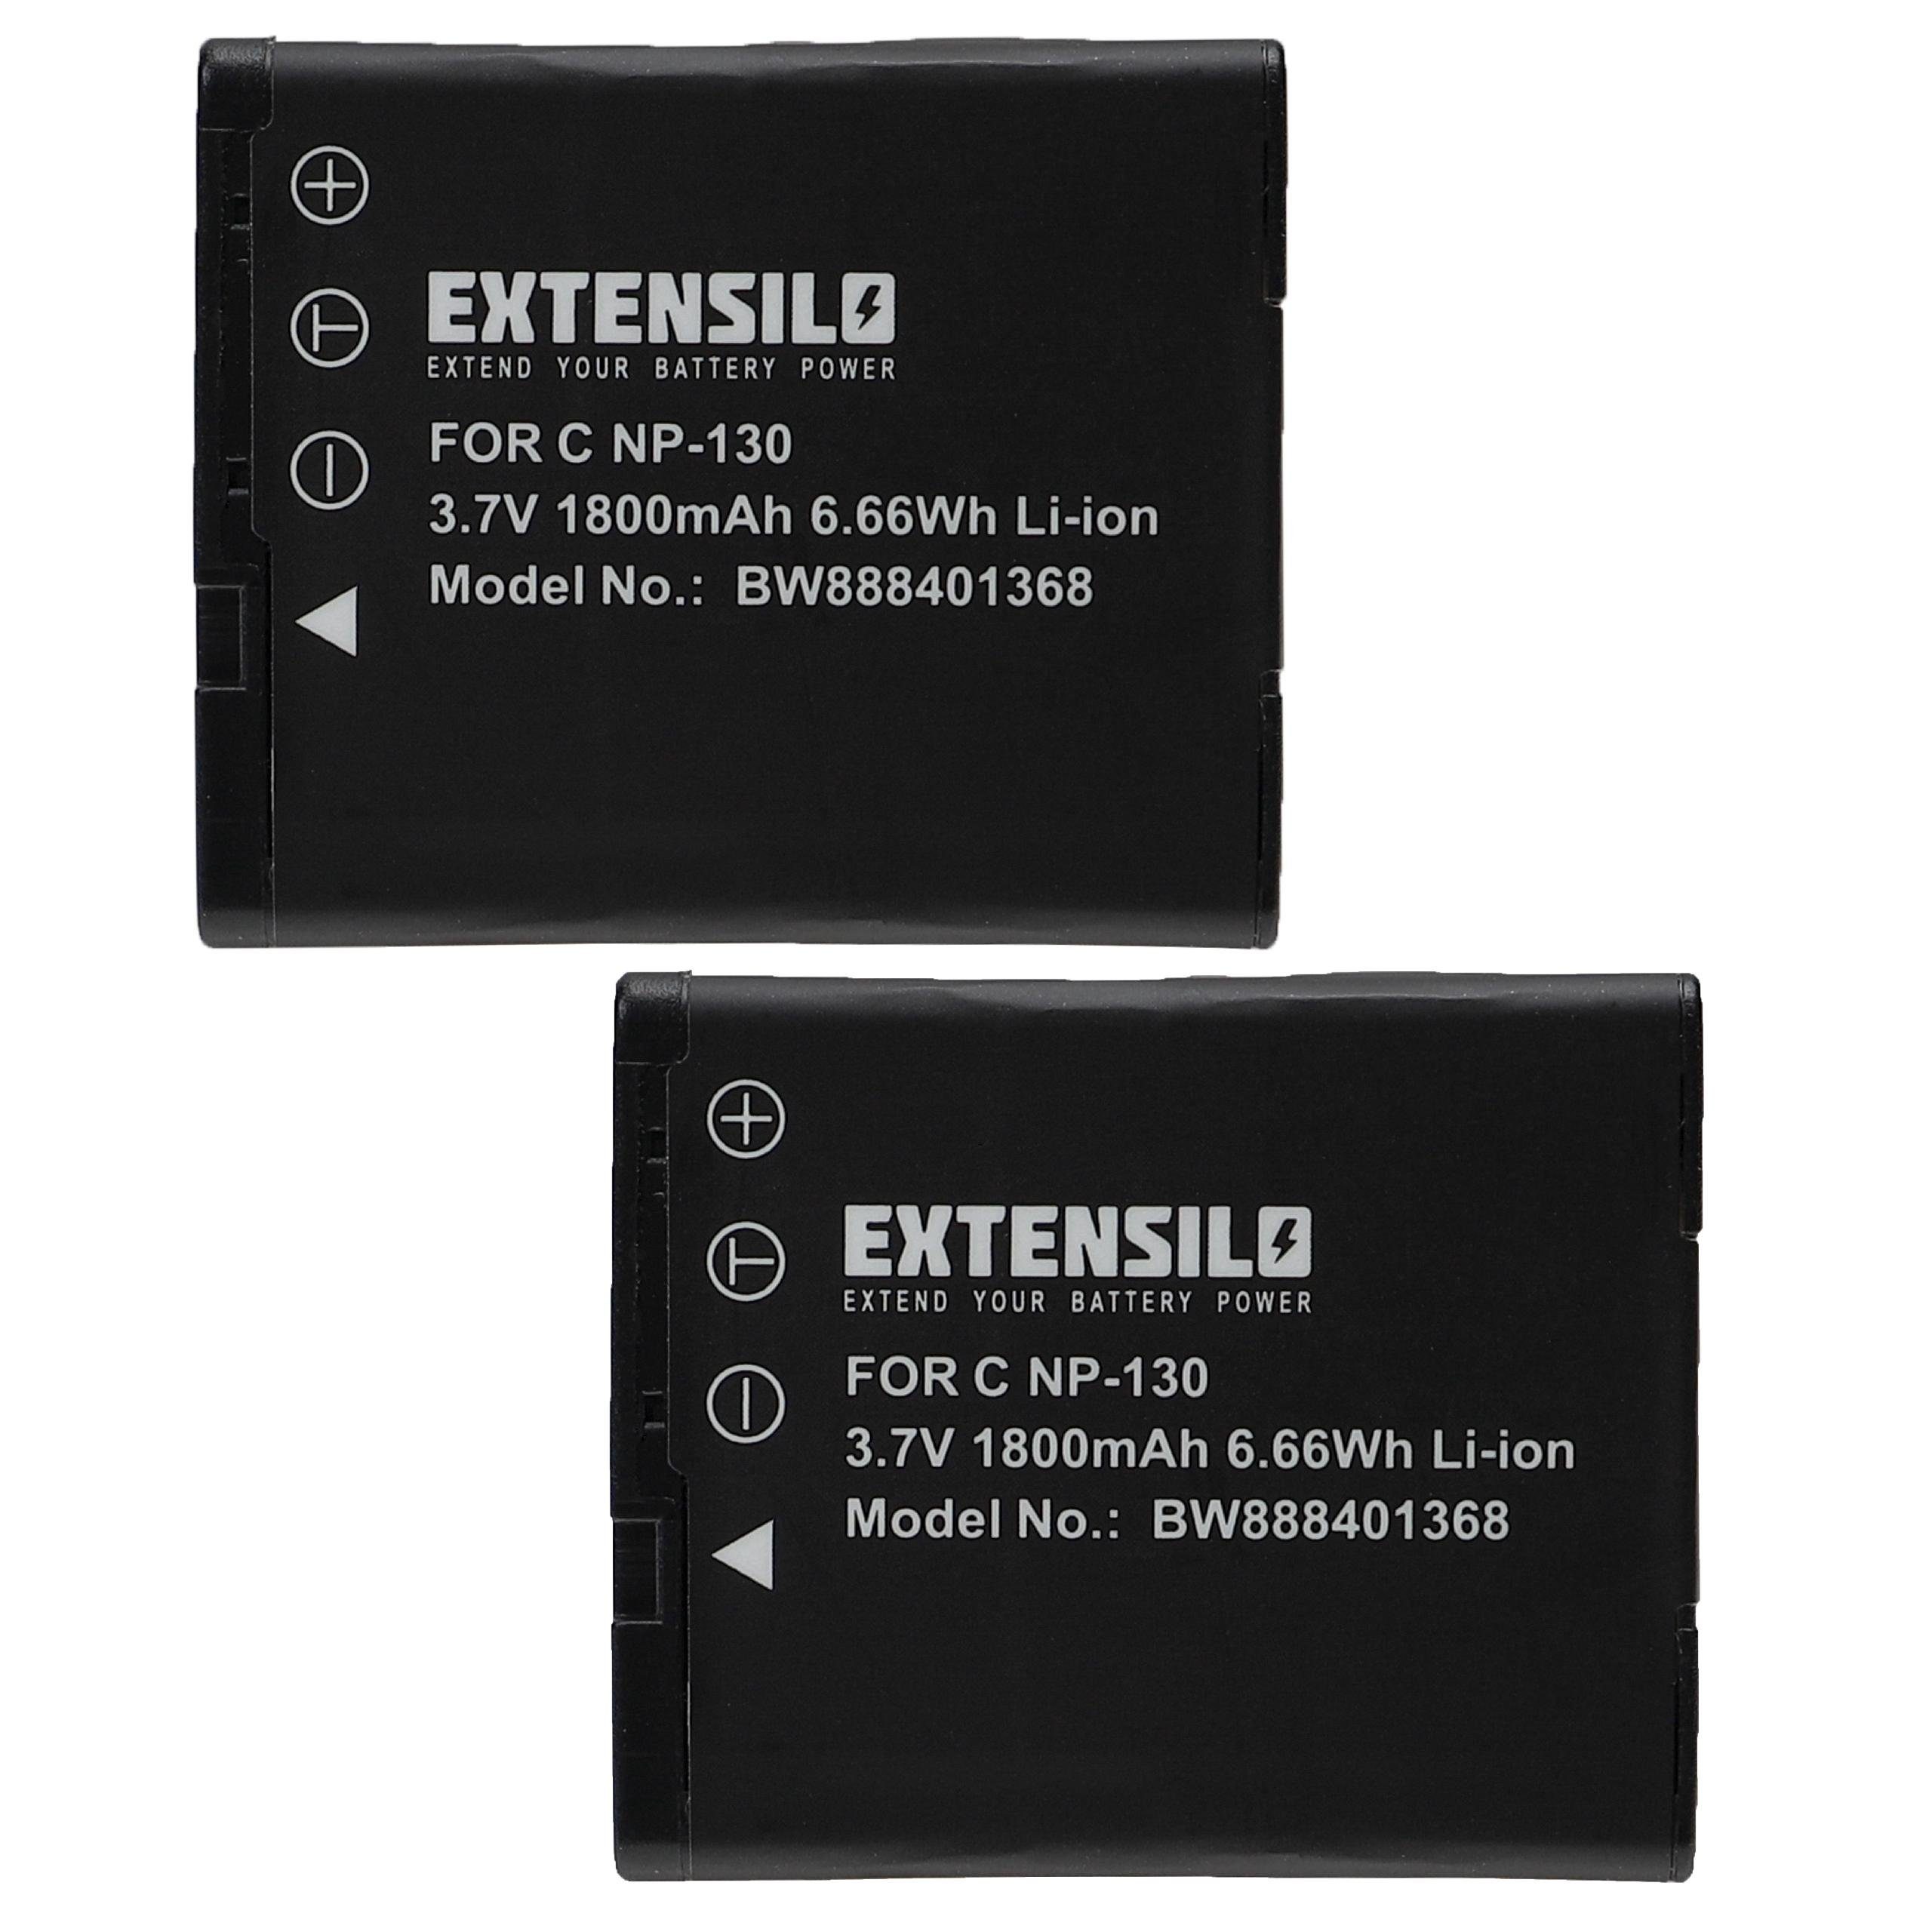 Extensilo passend für Casio Exilim EX-ZR200, EX-ZR100, EX-H30, EX-ZR300 Kamera / Foto Digitalkamera (1800mAh, 3,7V, Li-Ion) Kamera-Akku 1800 mAh